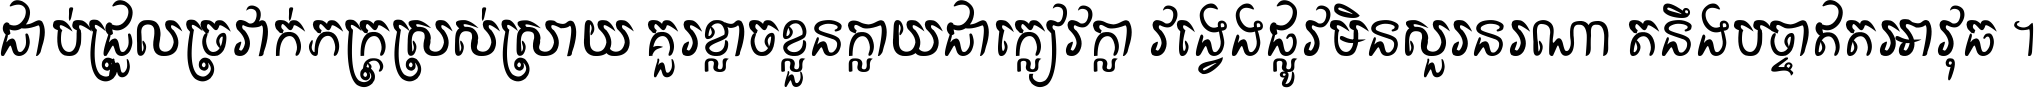 Khmer P Doun-teav